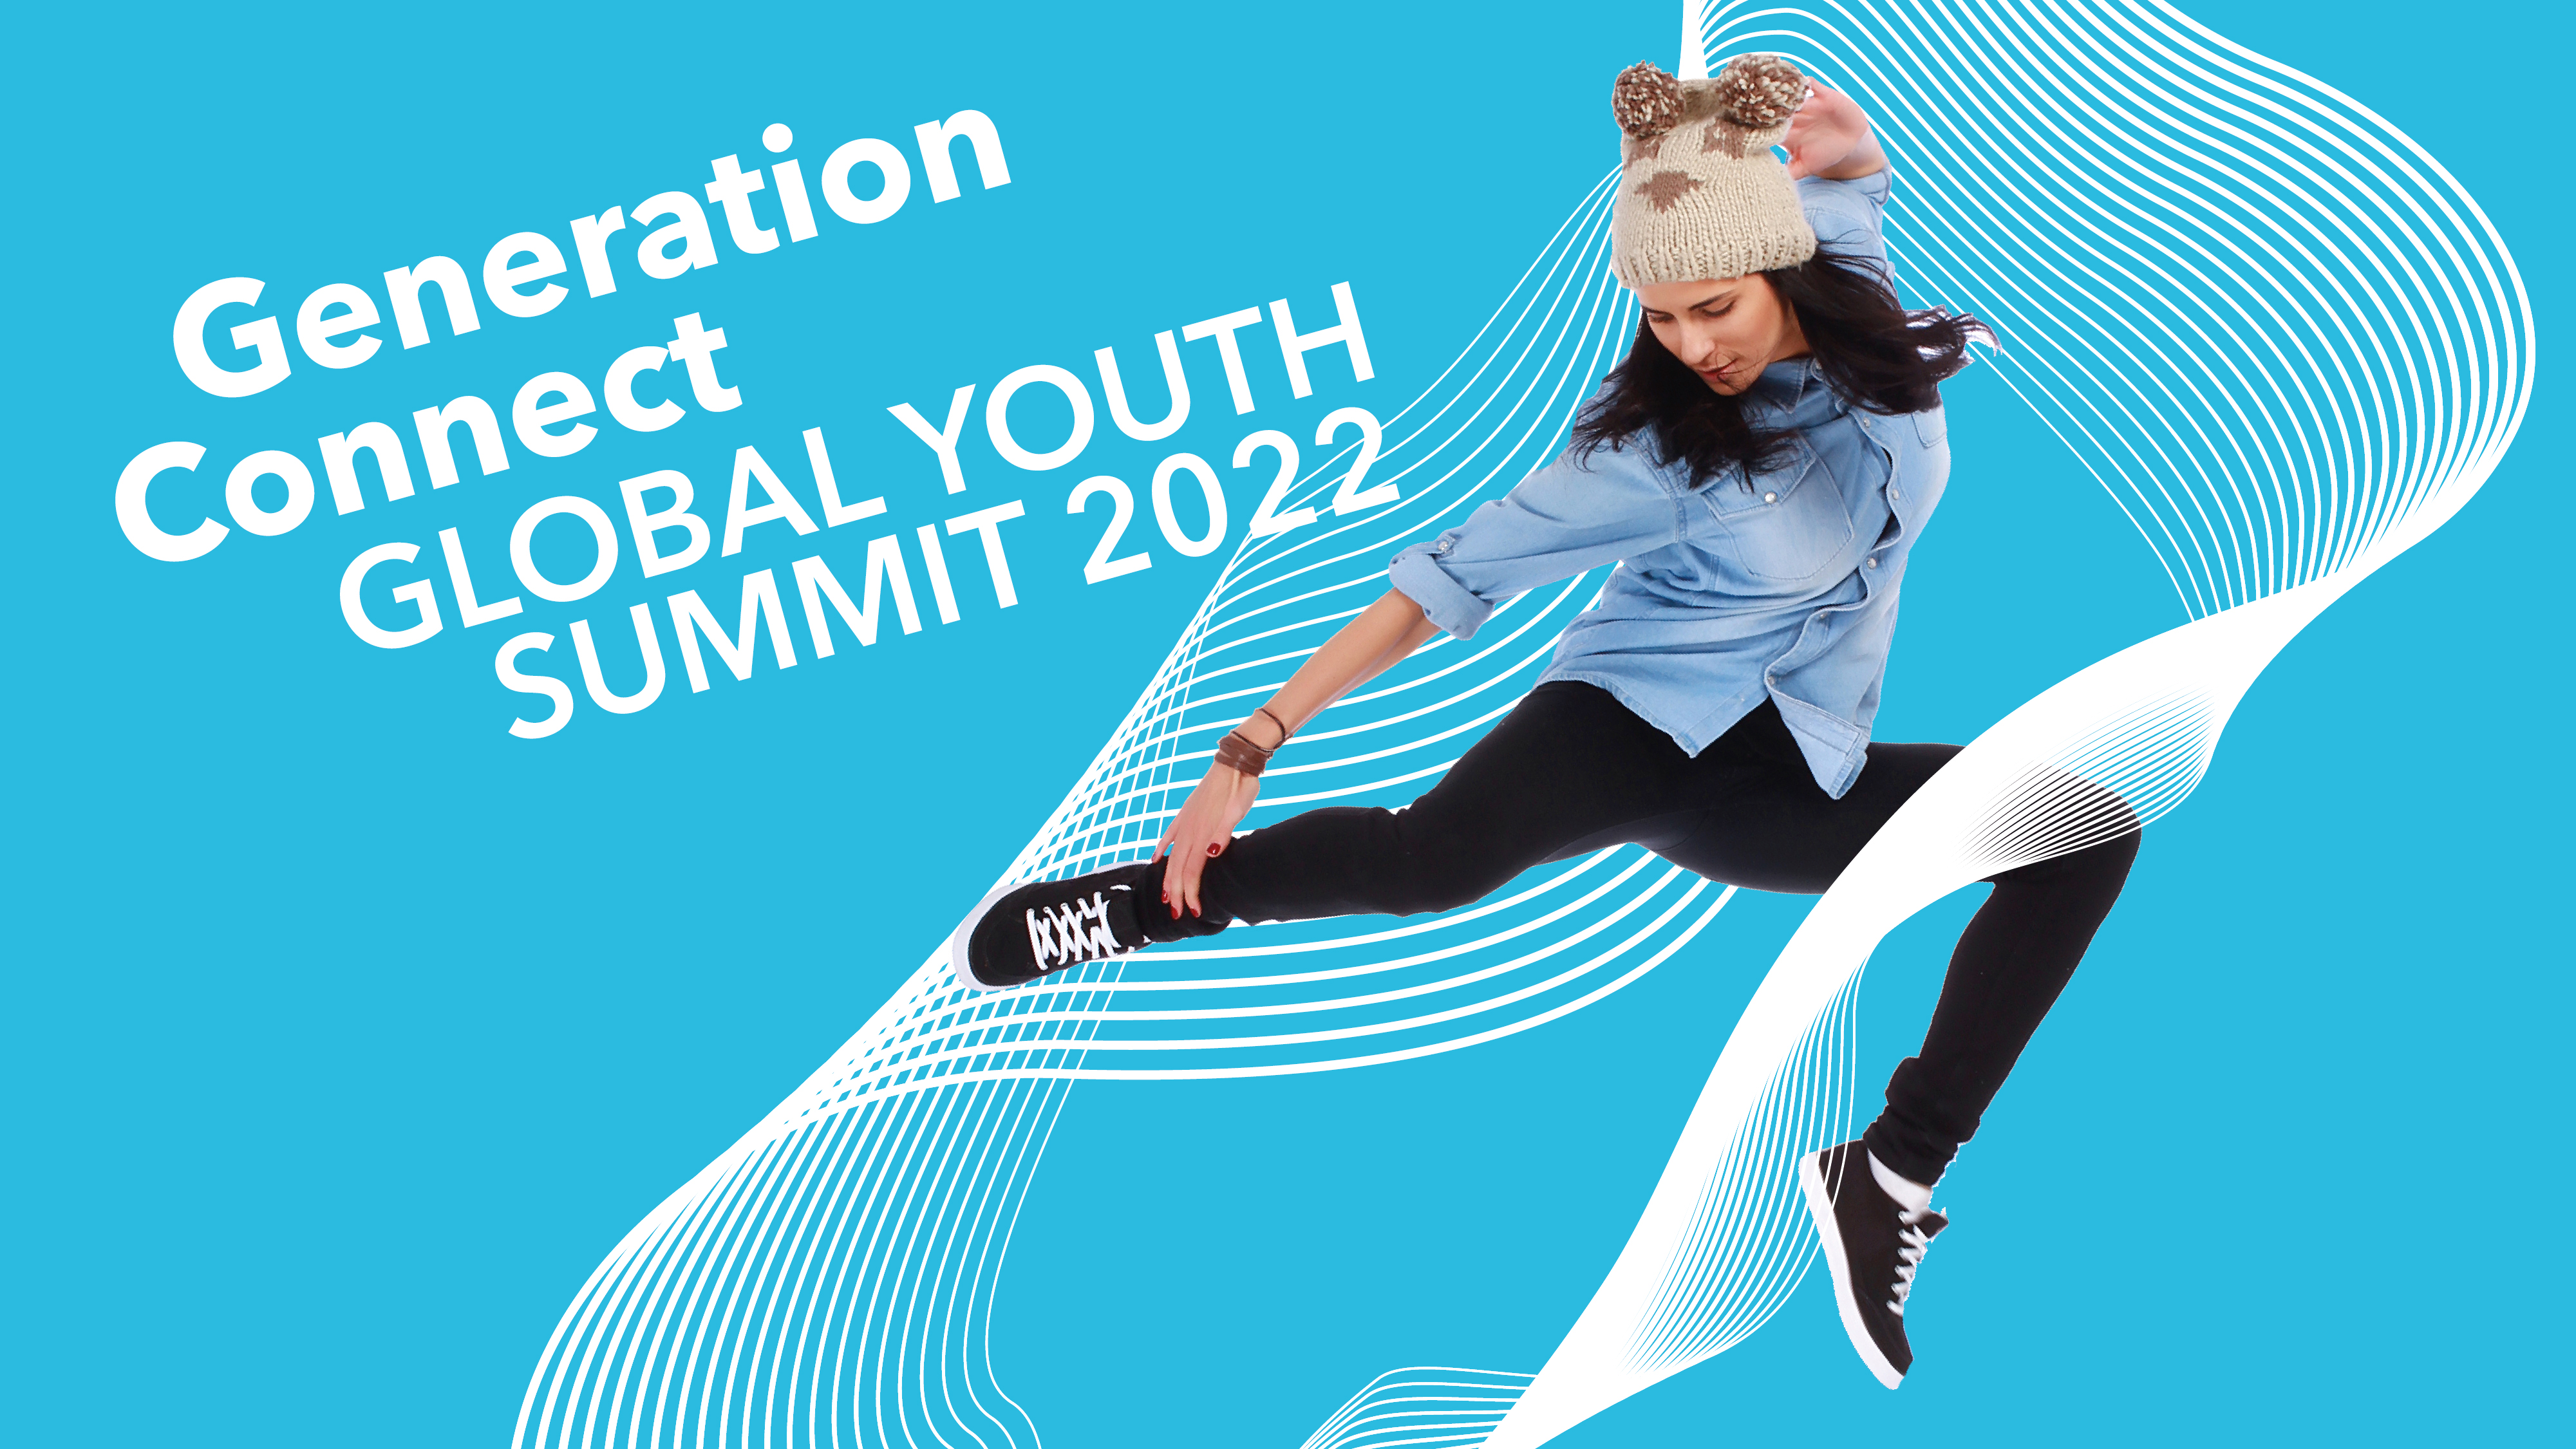 Global-Youth-Summit_ITU.jpg